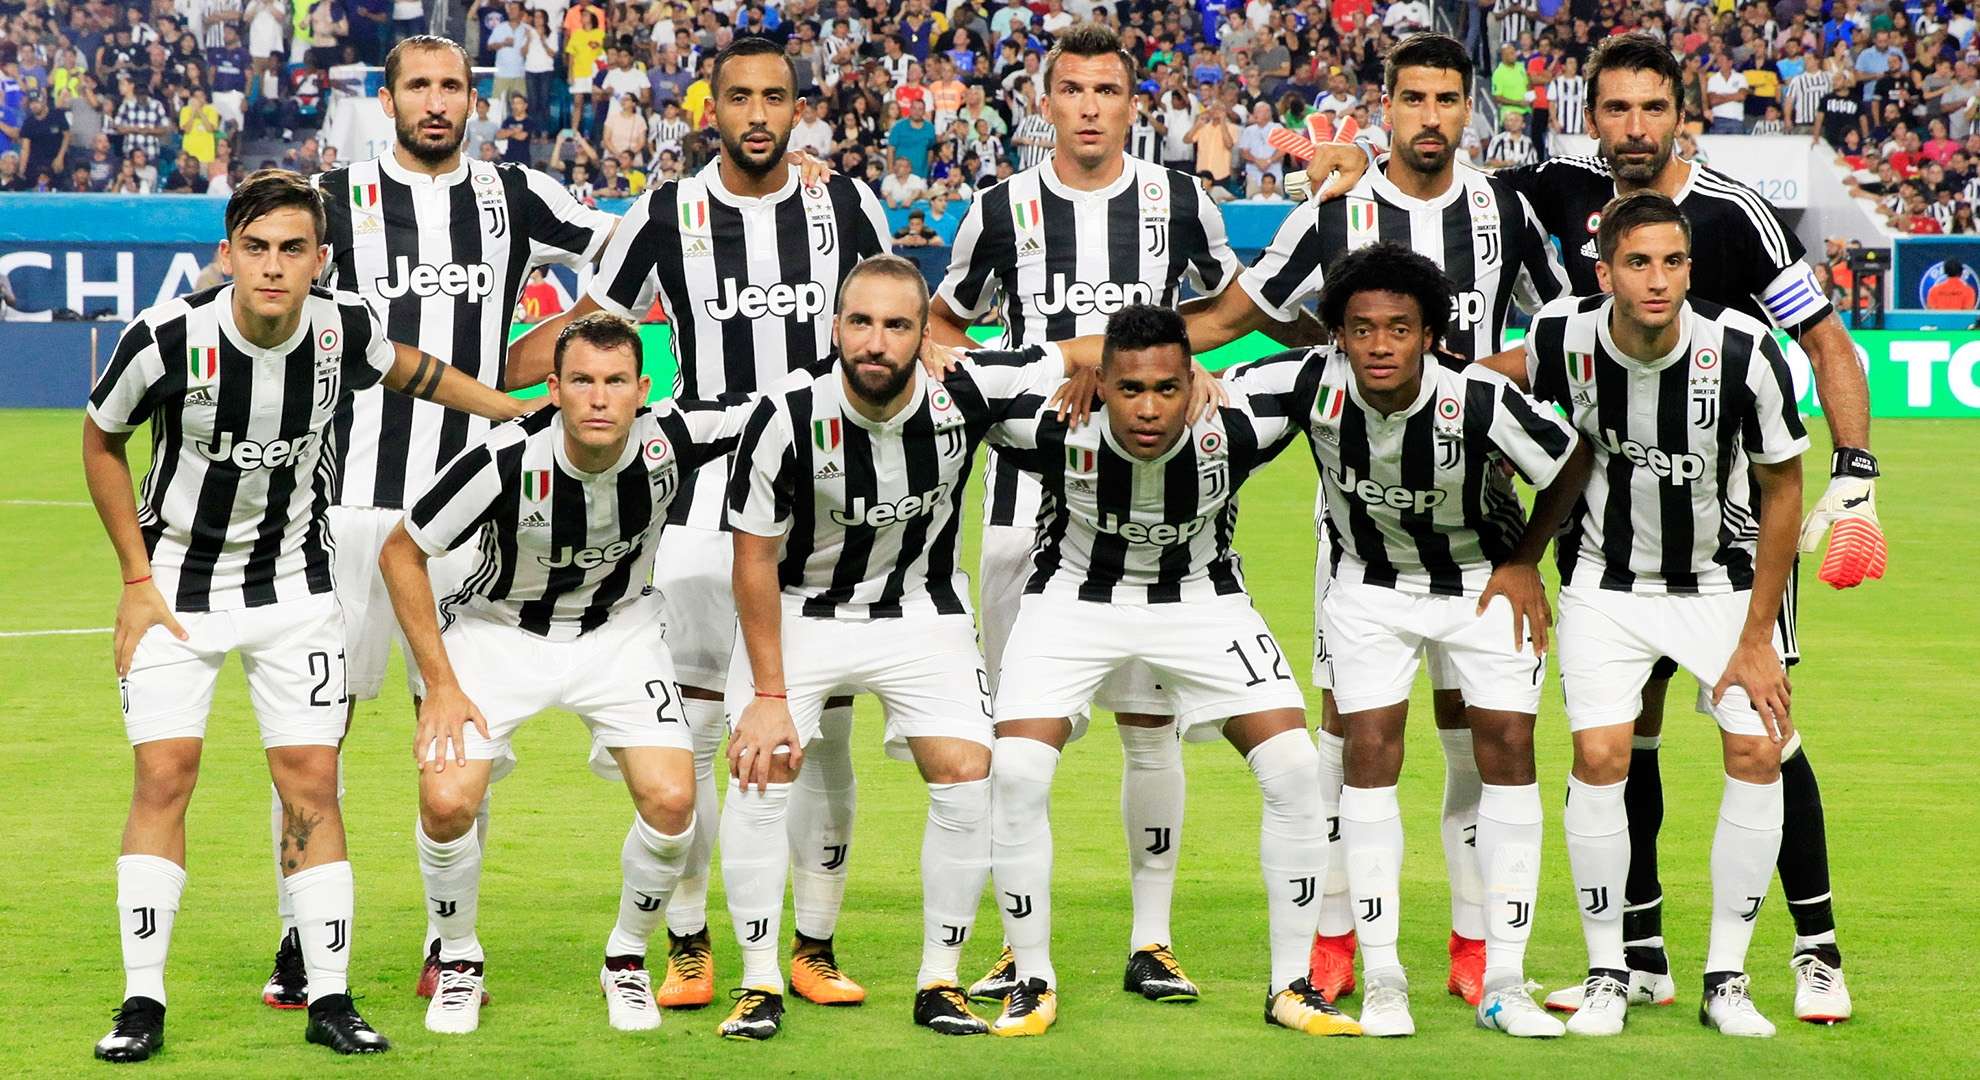 Juventus team